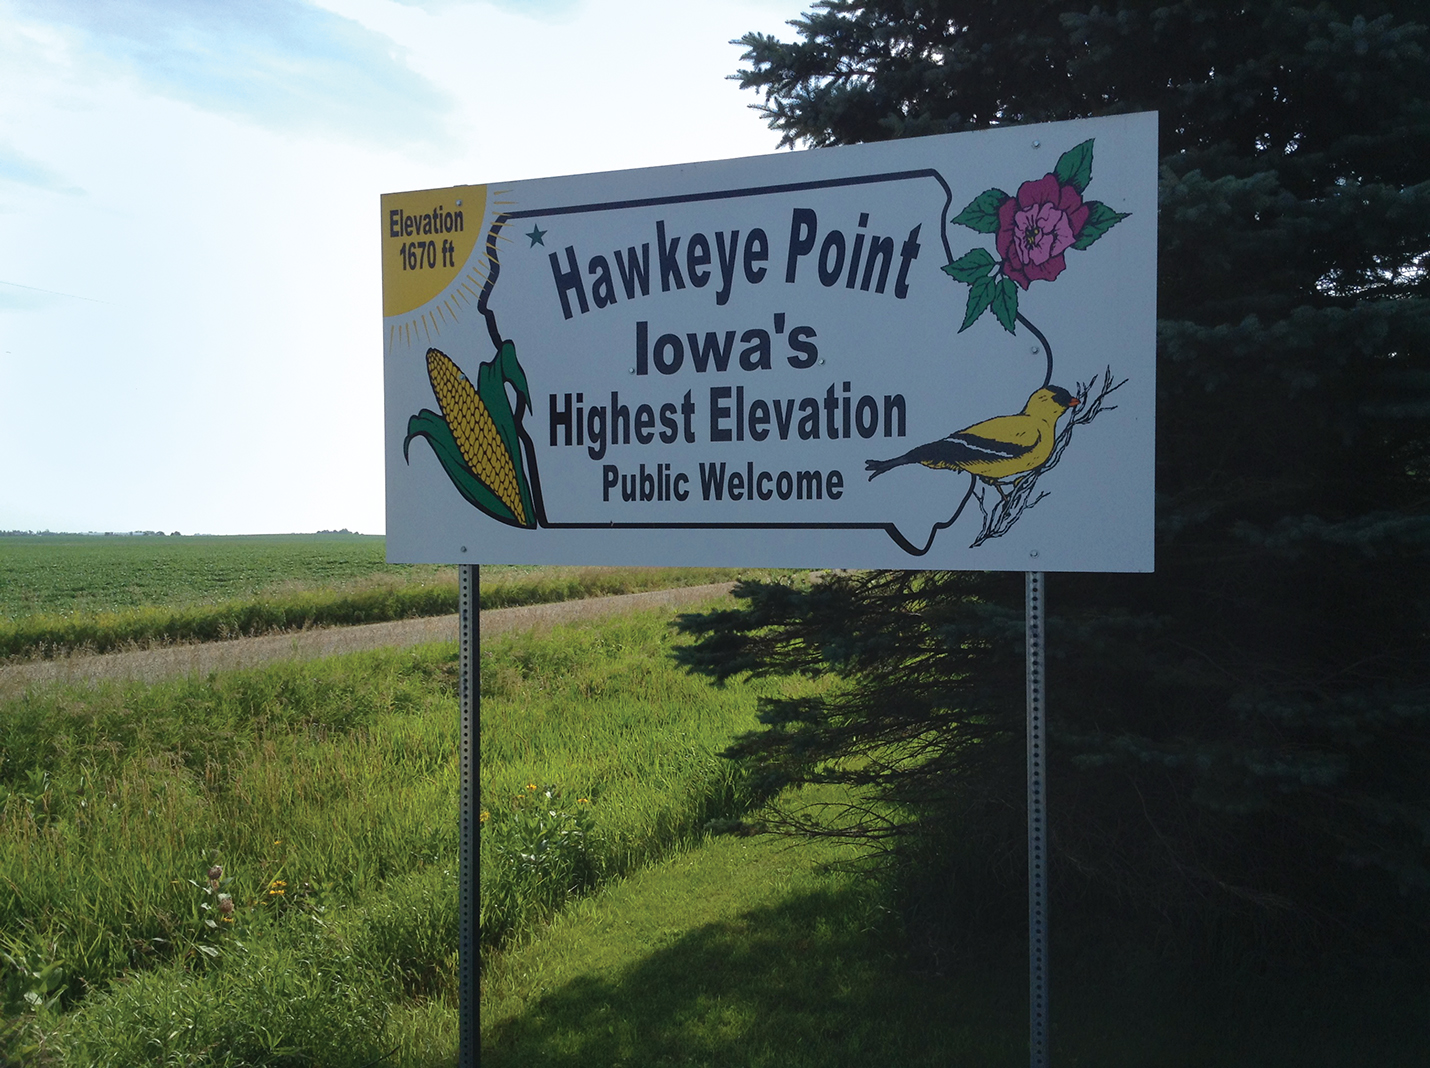 Hawkeye Point in Iowa